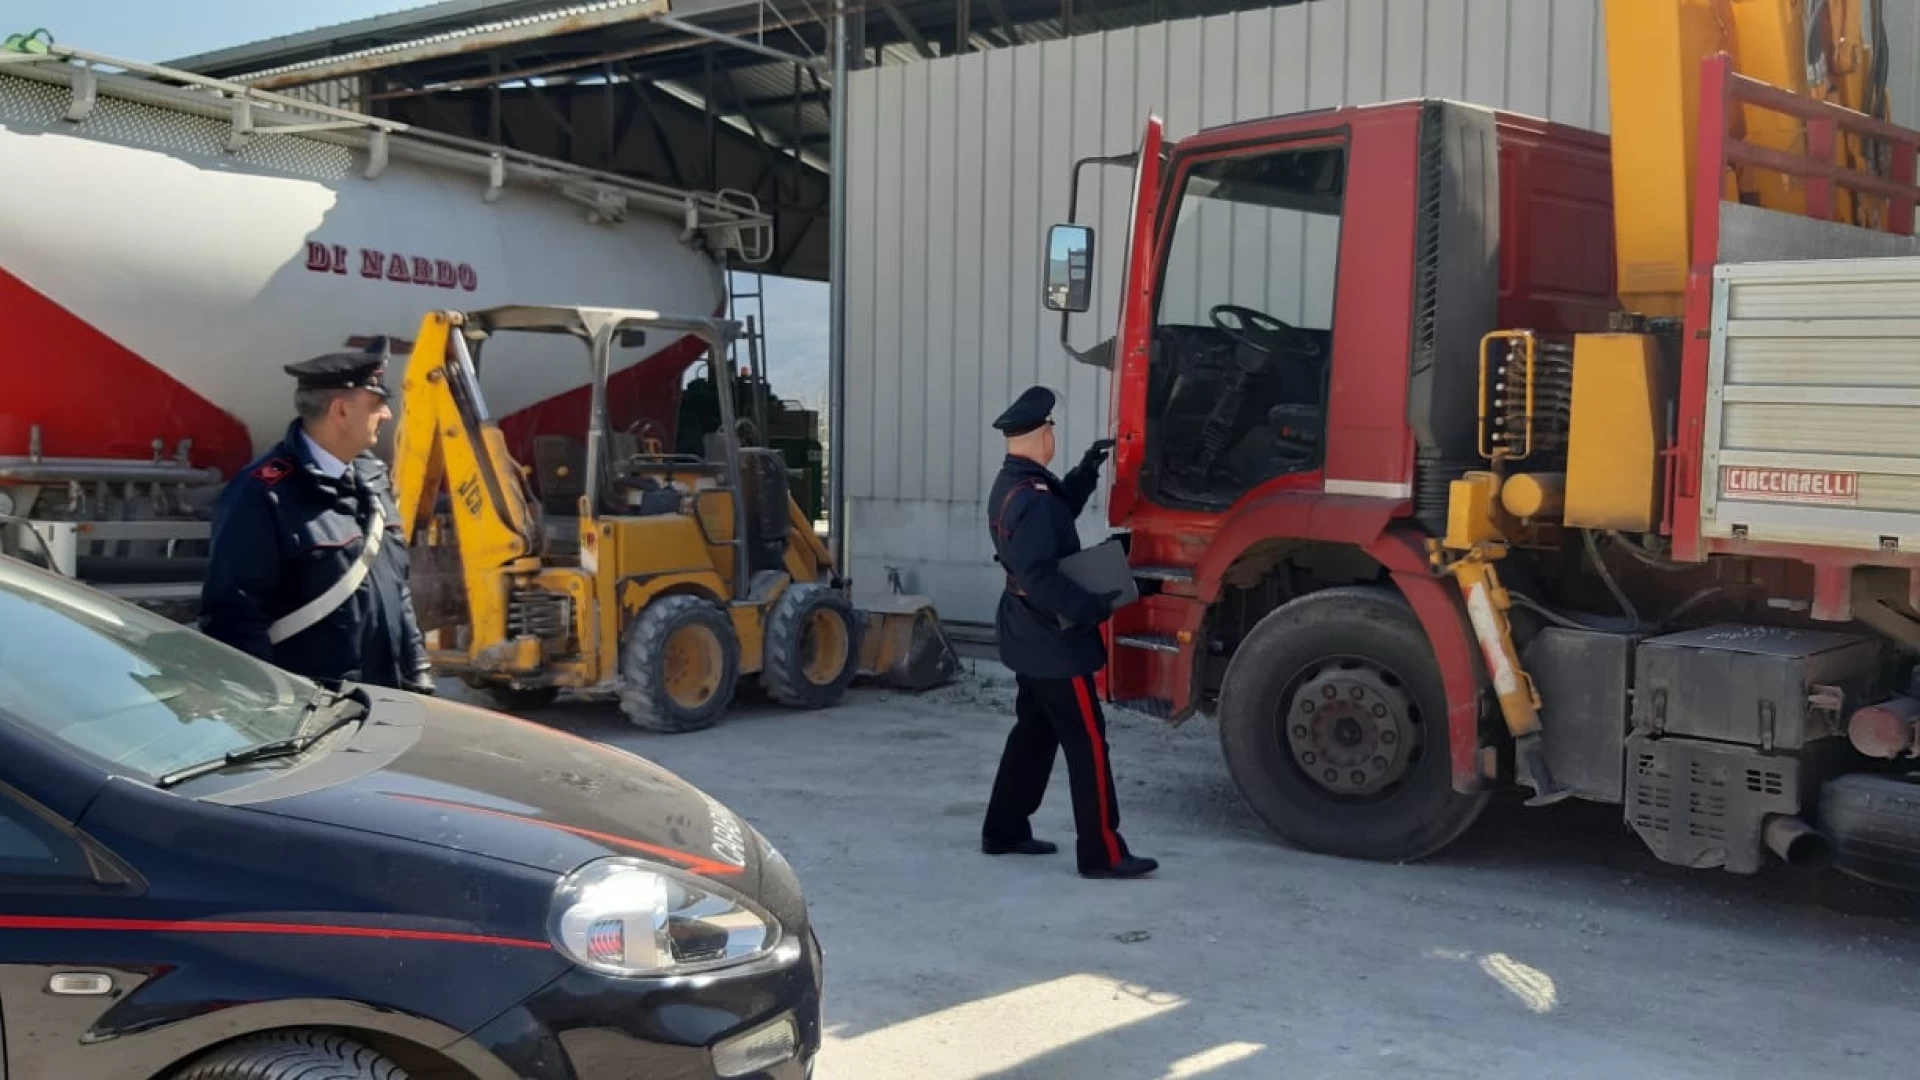 Venafro: Due romeni tratti in arresto dai Carabinieri per tentato furto aggravato in concorso di mezzi pesanti.